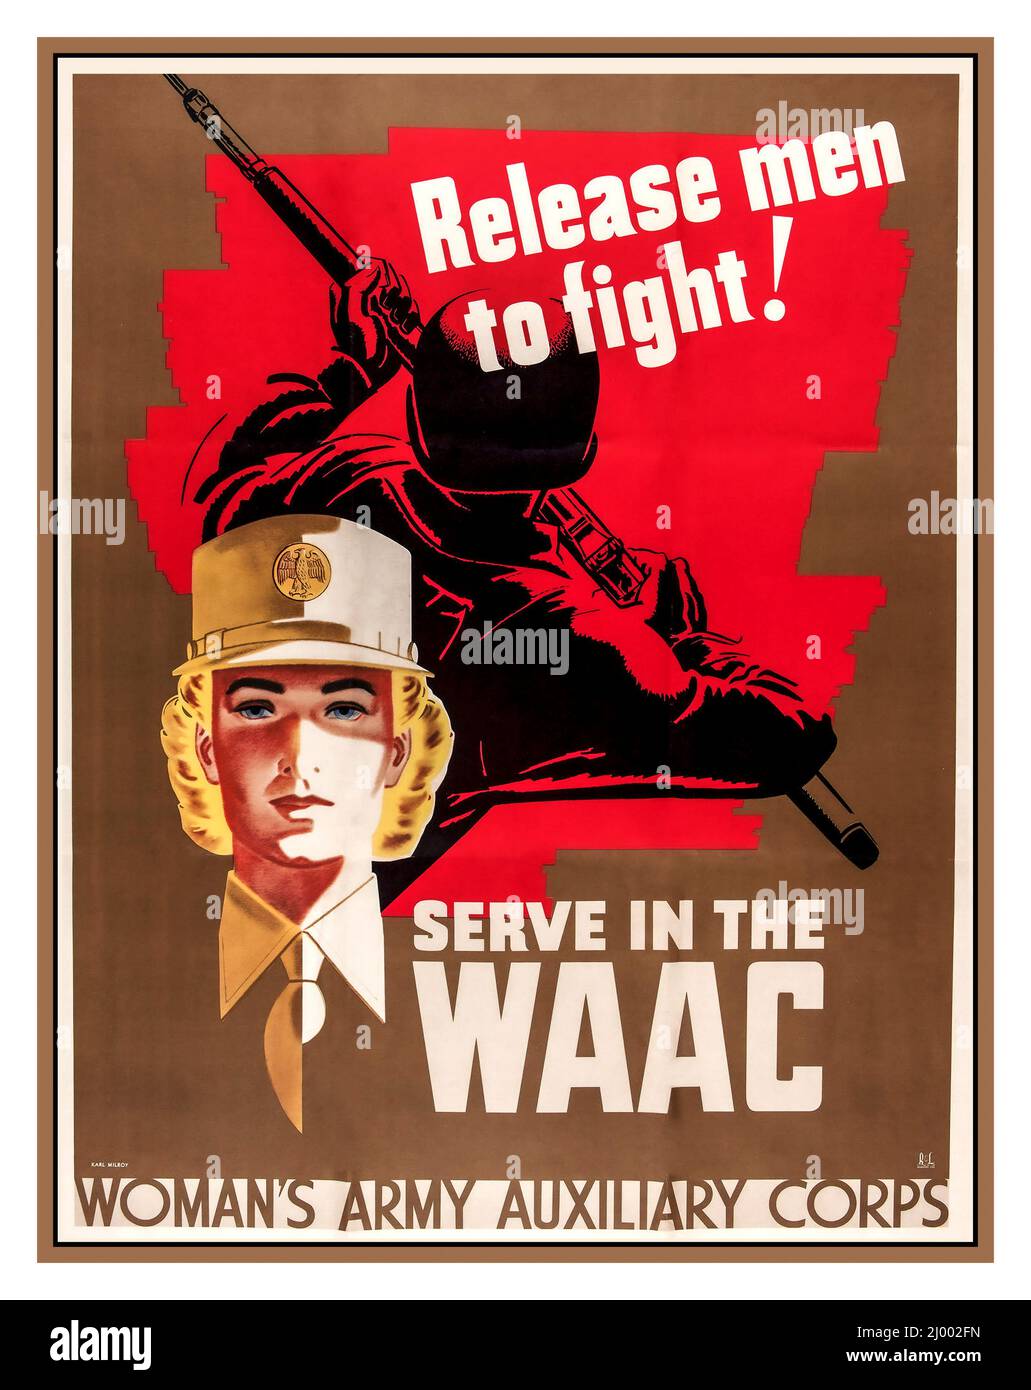 WW2 1942 USA affiche de recrutement américaine 'Release men to Fight' 'ERVE IN THE WAAC' Woman's Army Auxiliary corps États-Unis d'Amérique Seconde Guerre mondiale Seconde Guerre mondiale Banque D'Images